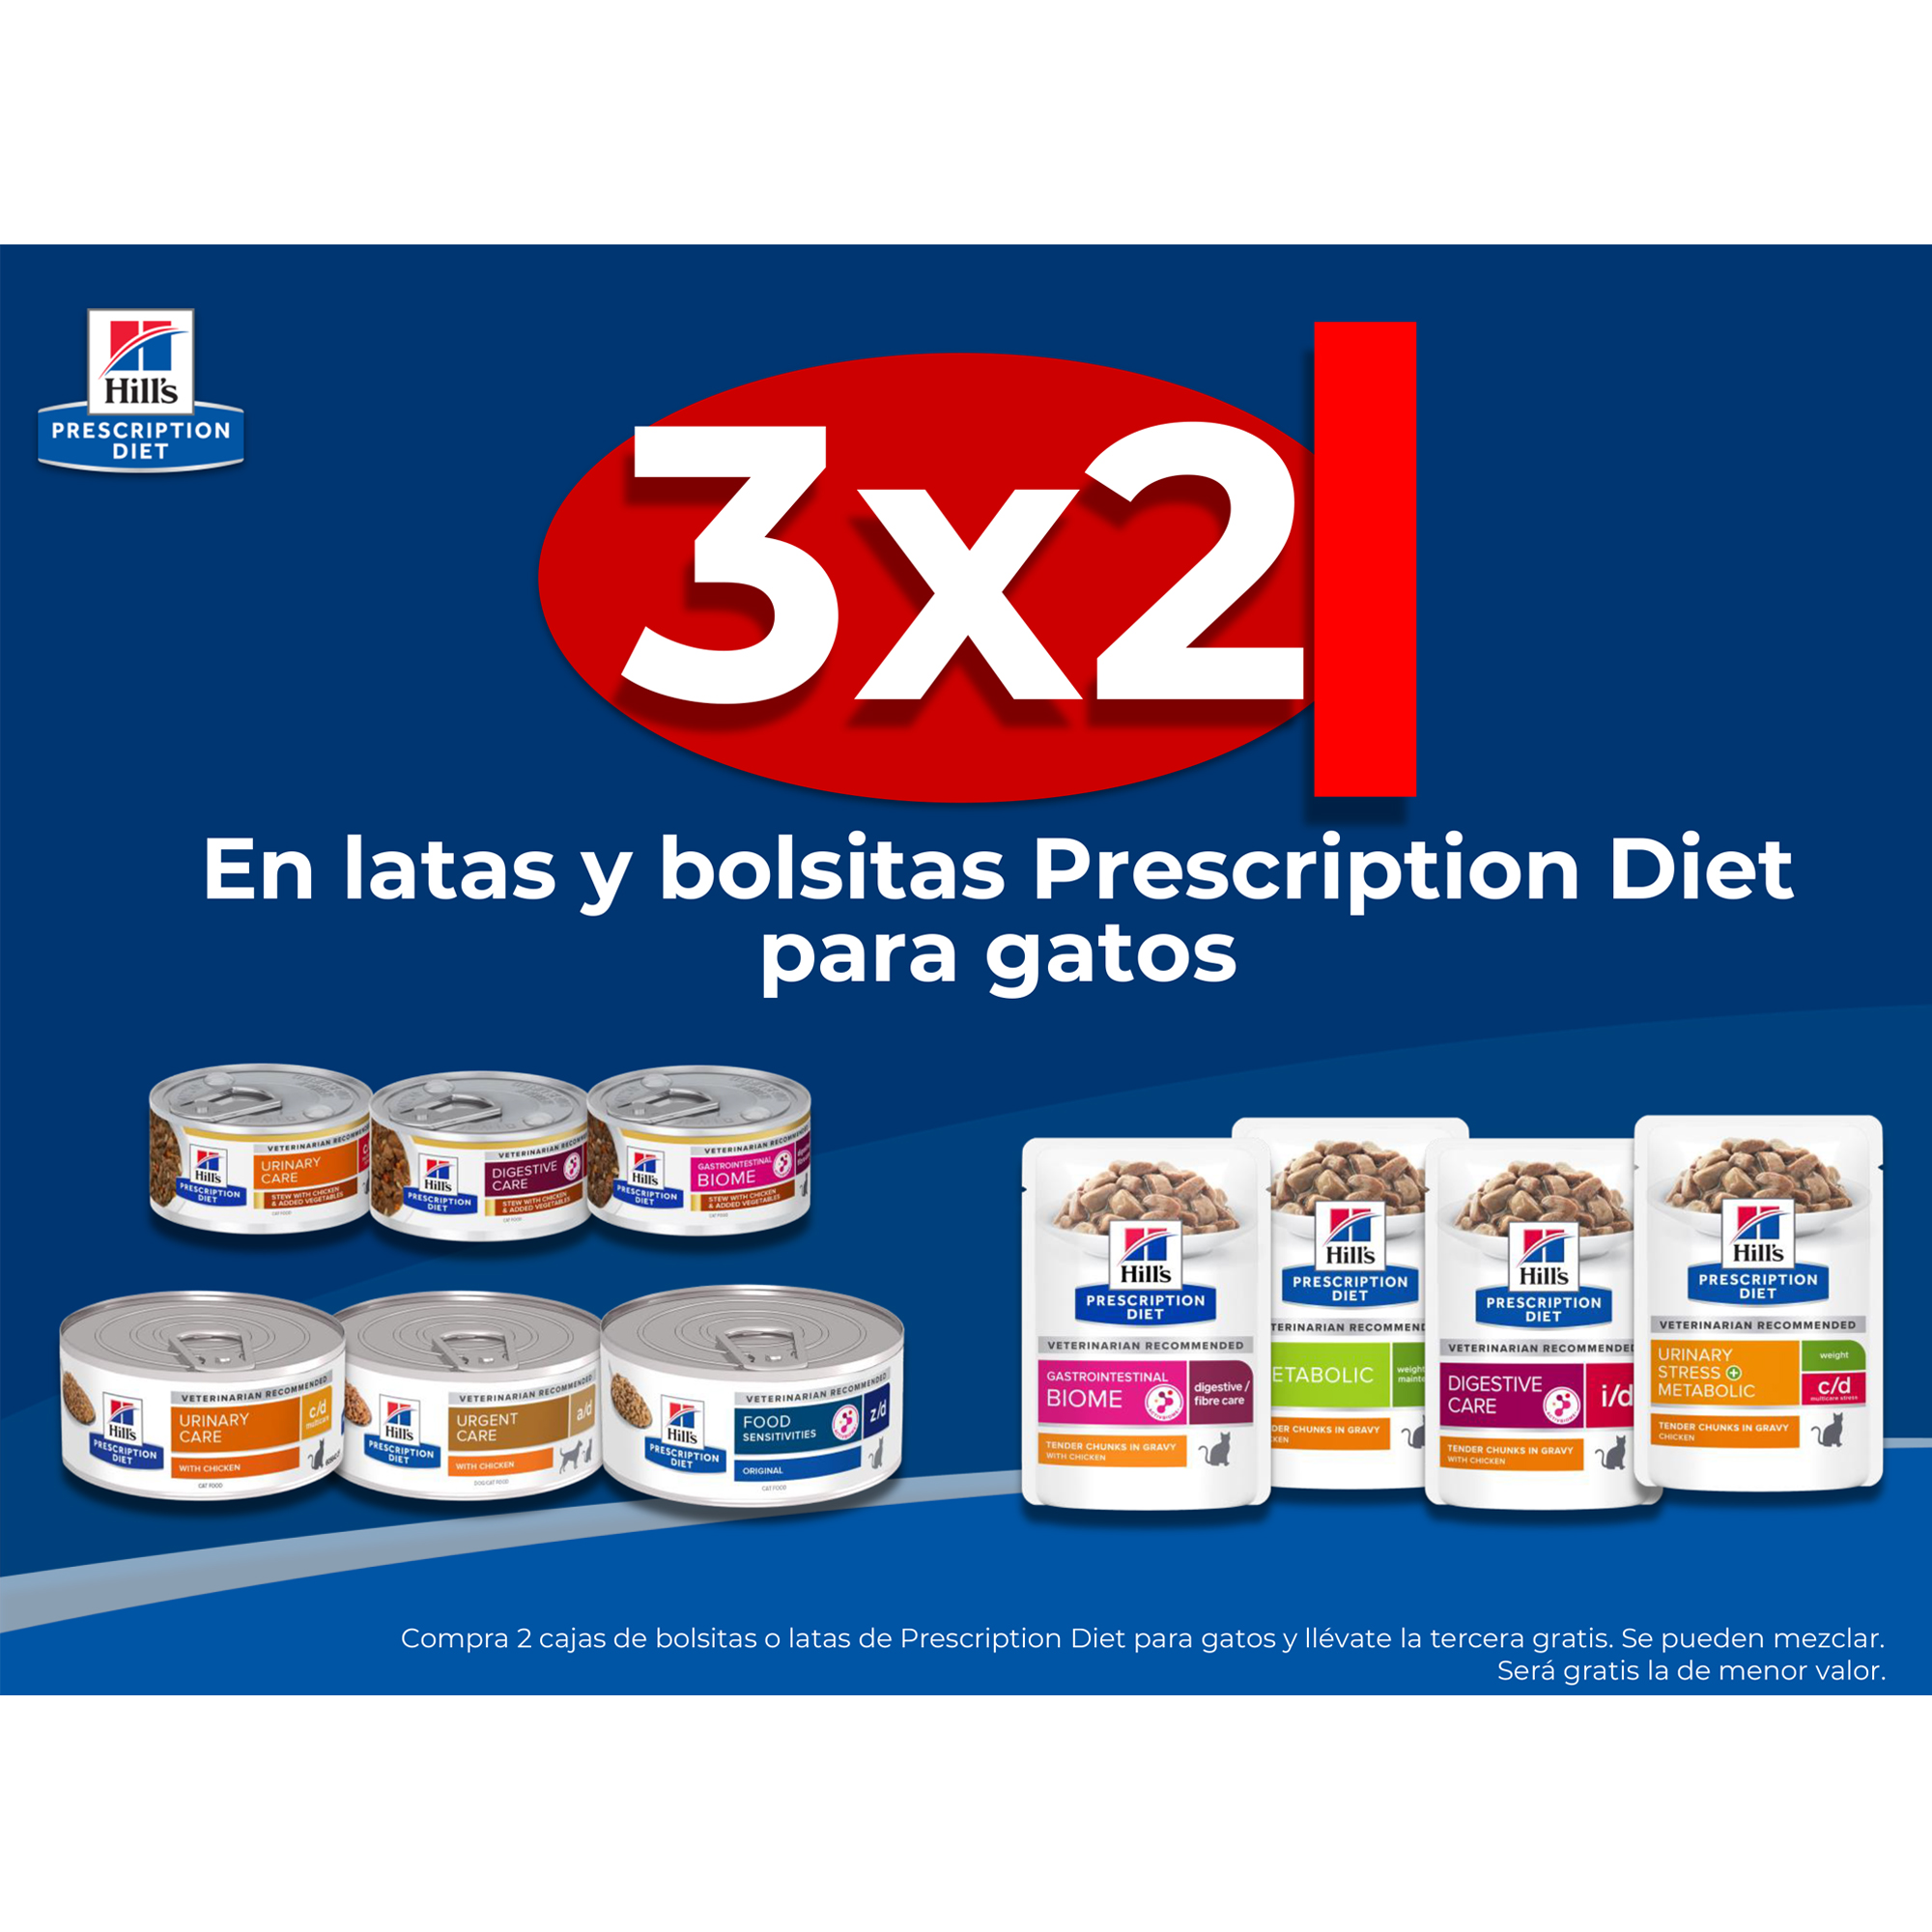 3X2 En latas y bolsitas Prescription Diet para gatos